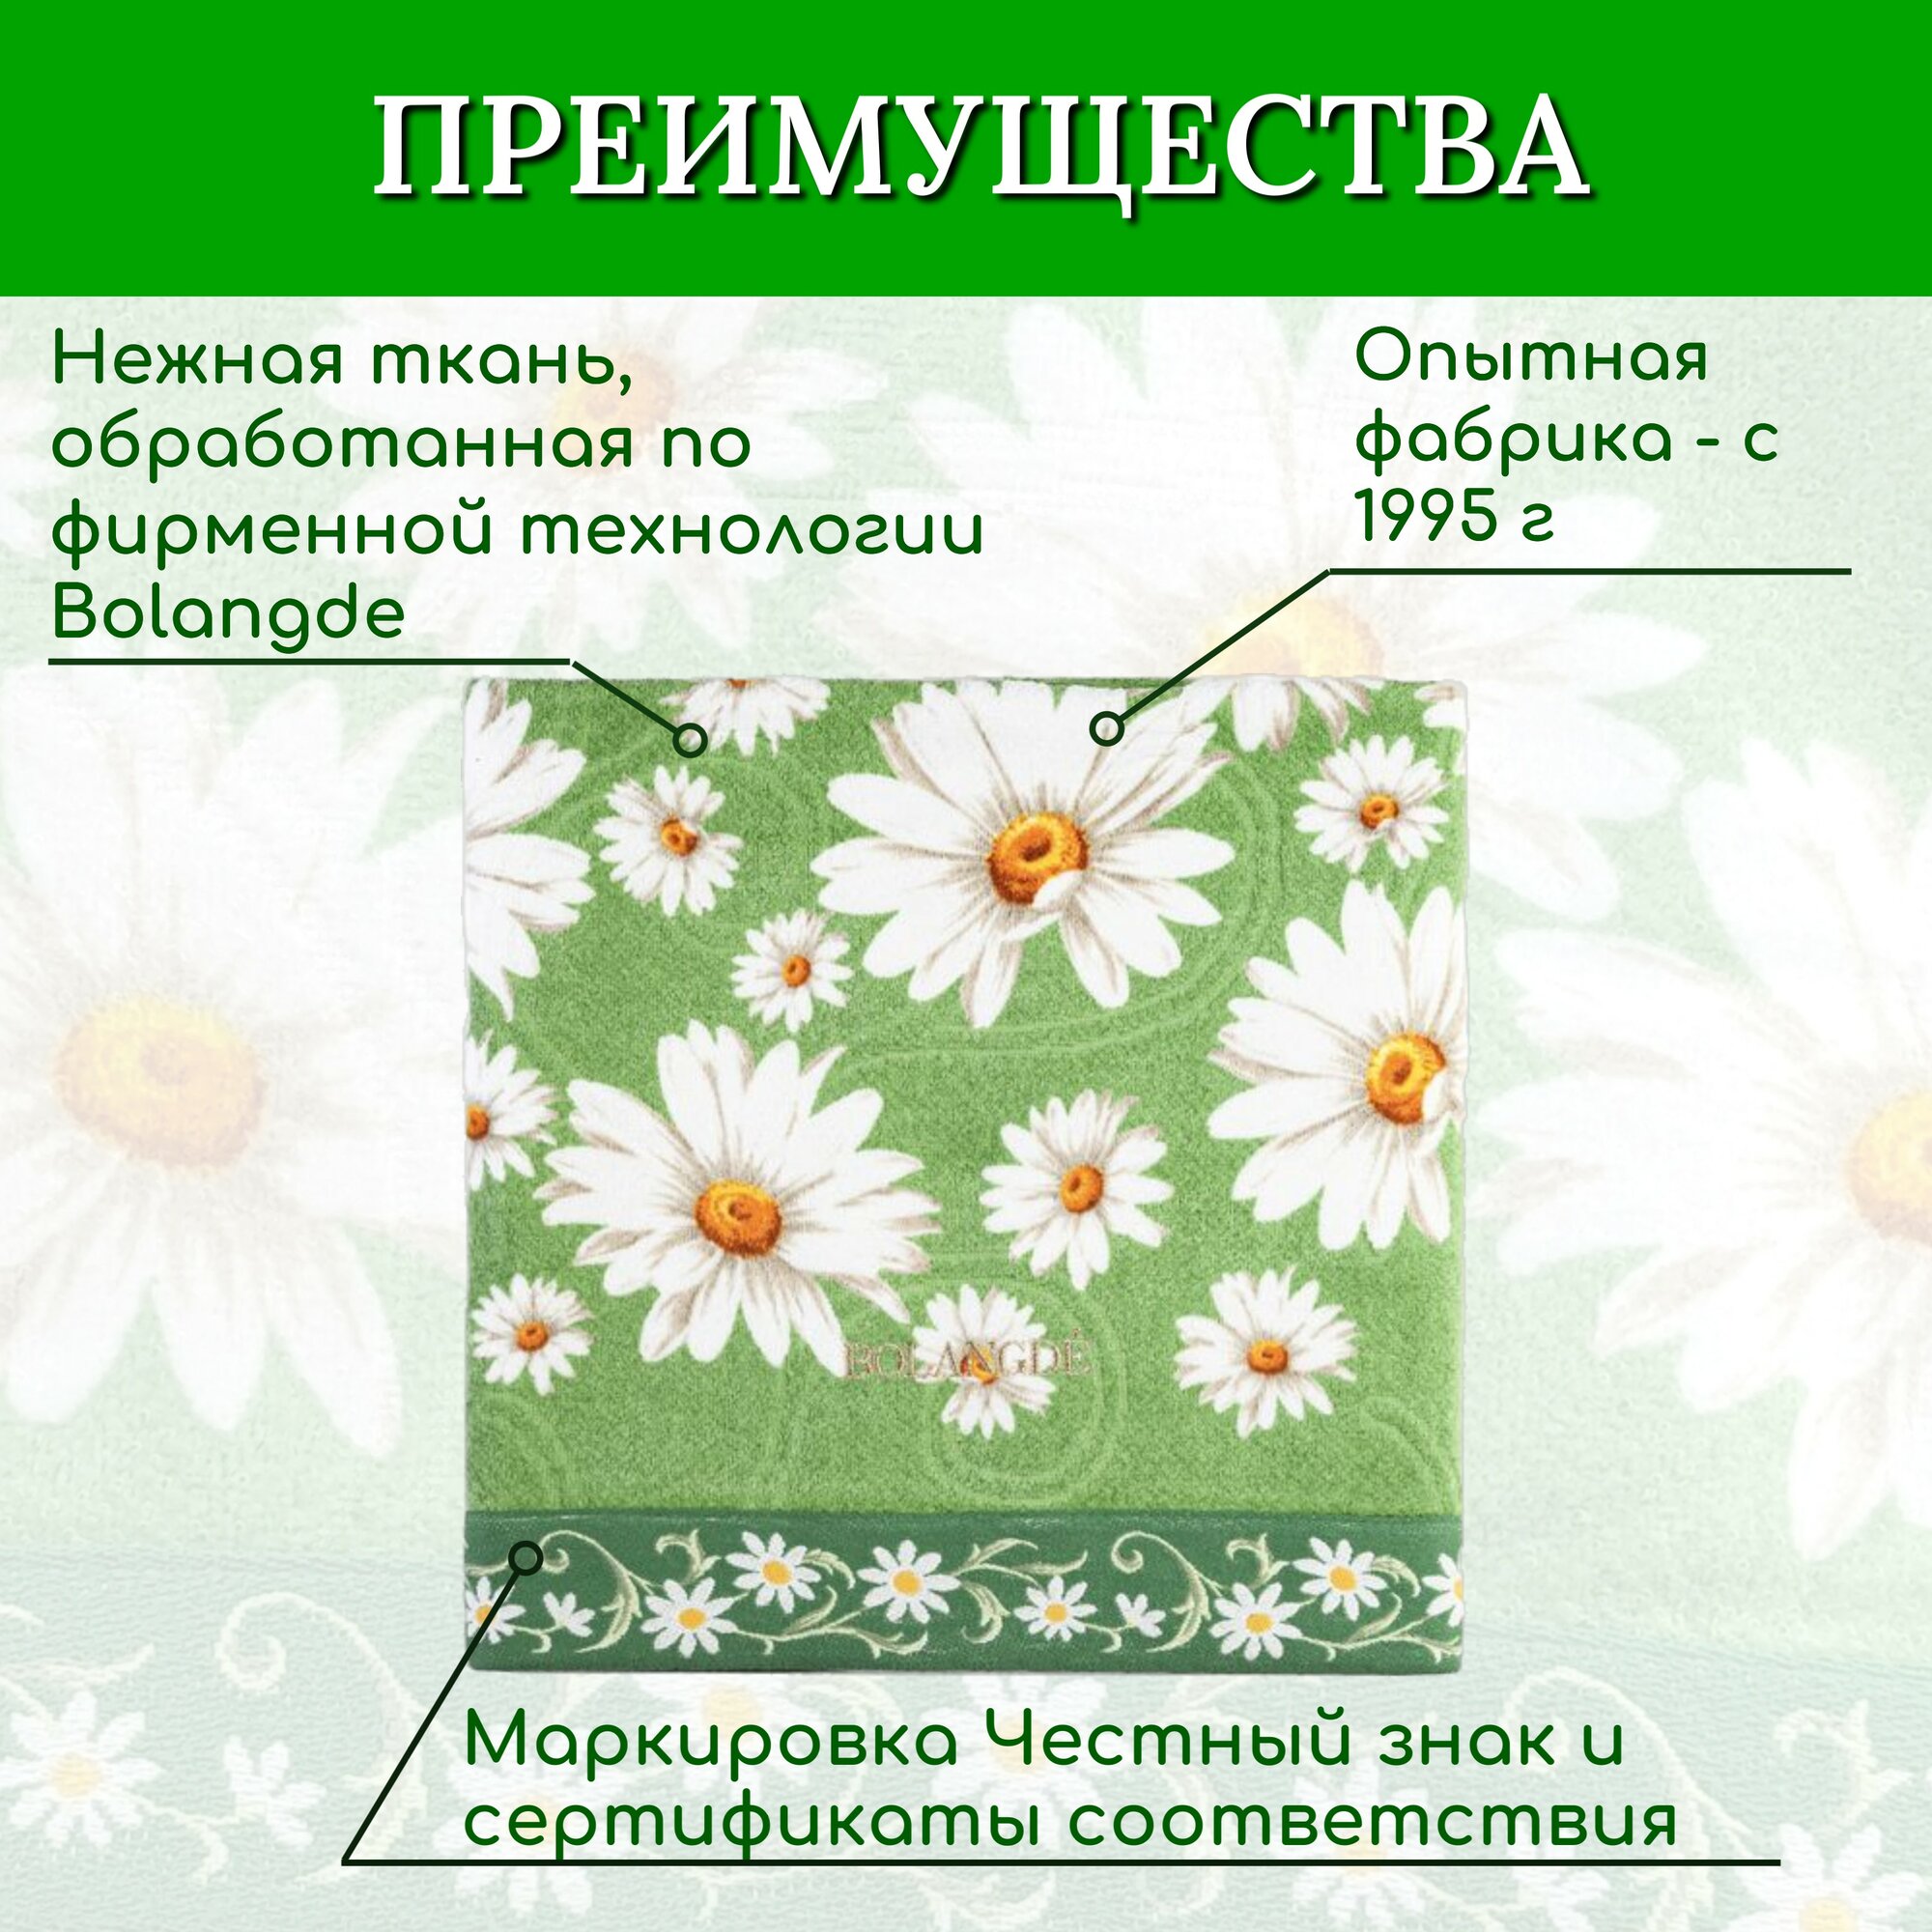 Полотенце для лица, рук махровое 1 шт, для детей и взрослых, для семьи BOLANGDE Япония Ромашки, зеленый, размер 34х78